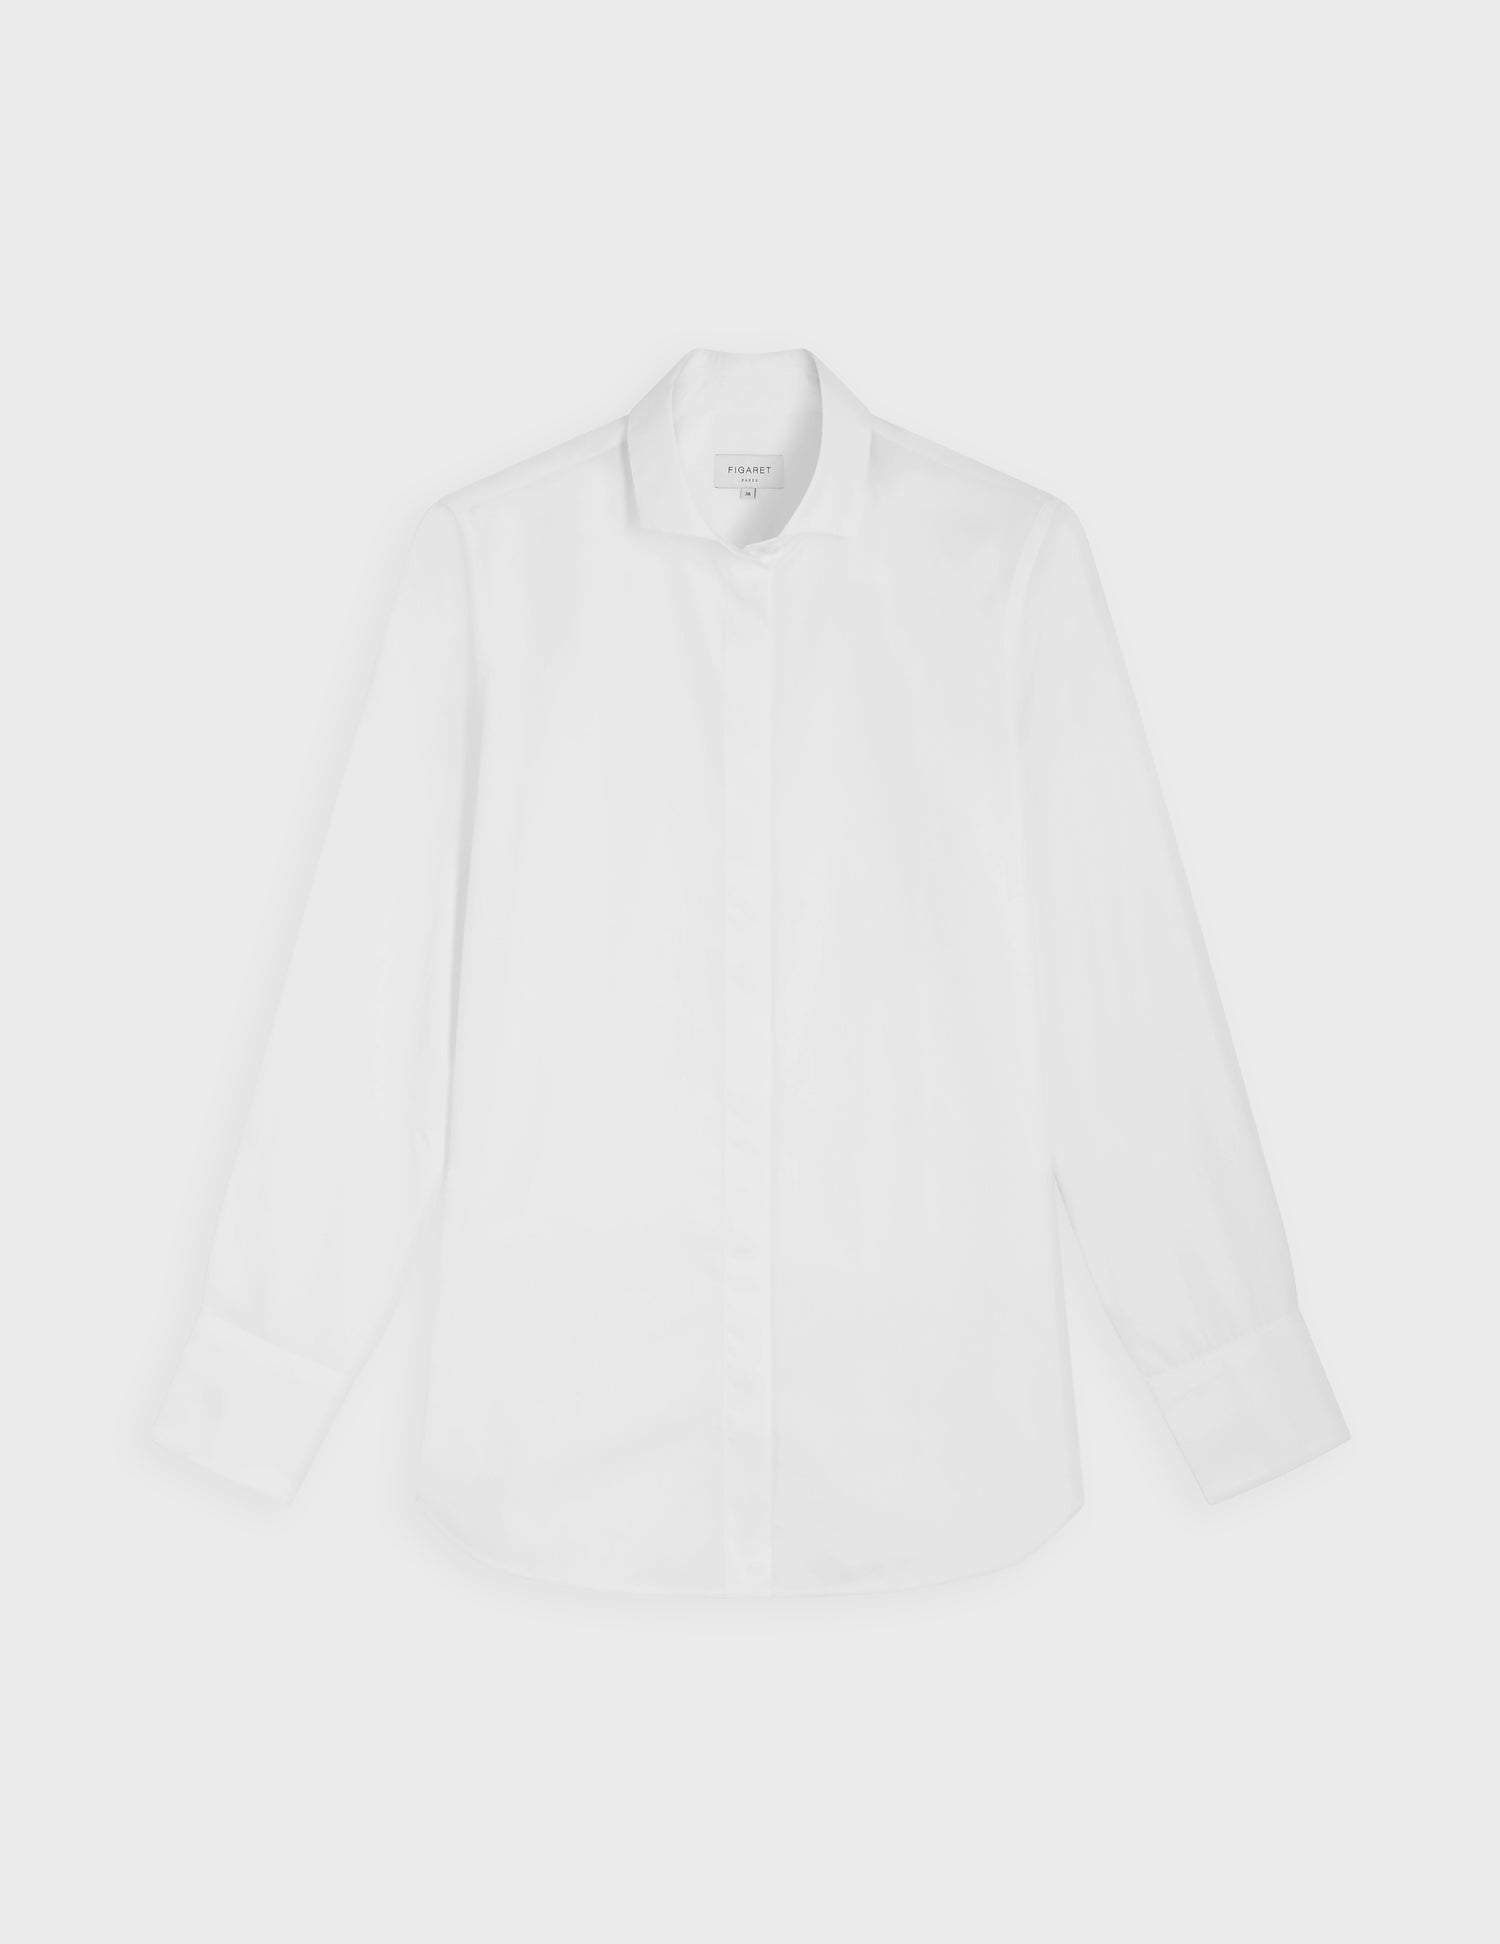 Caroline white shirt - Poplin#4